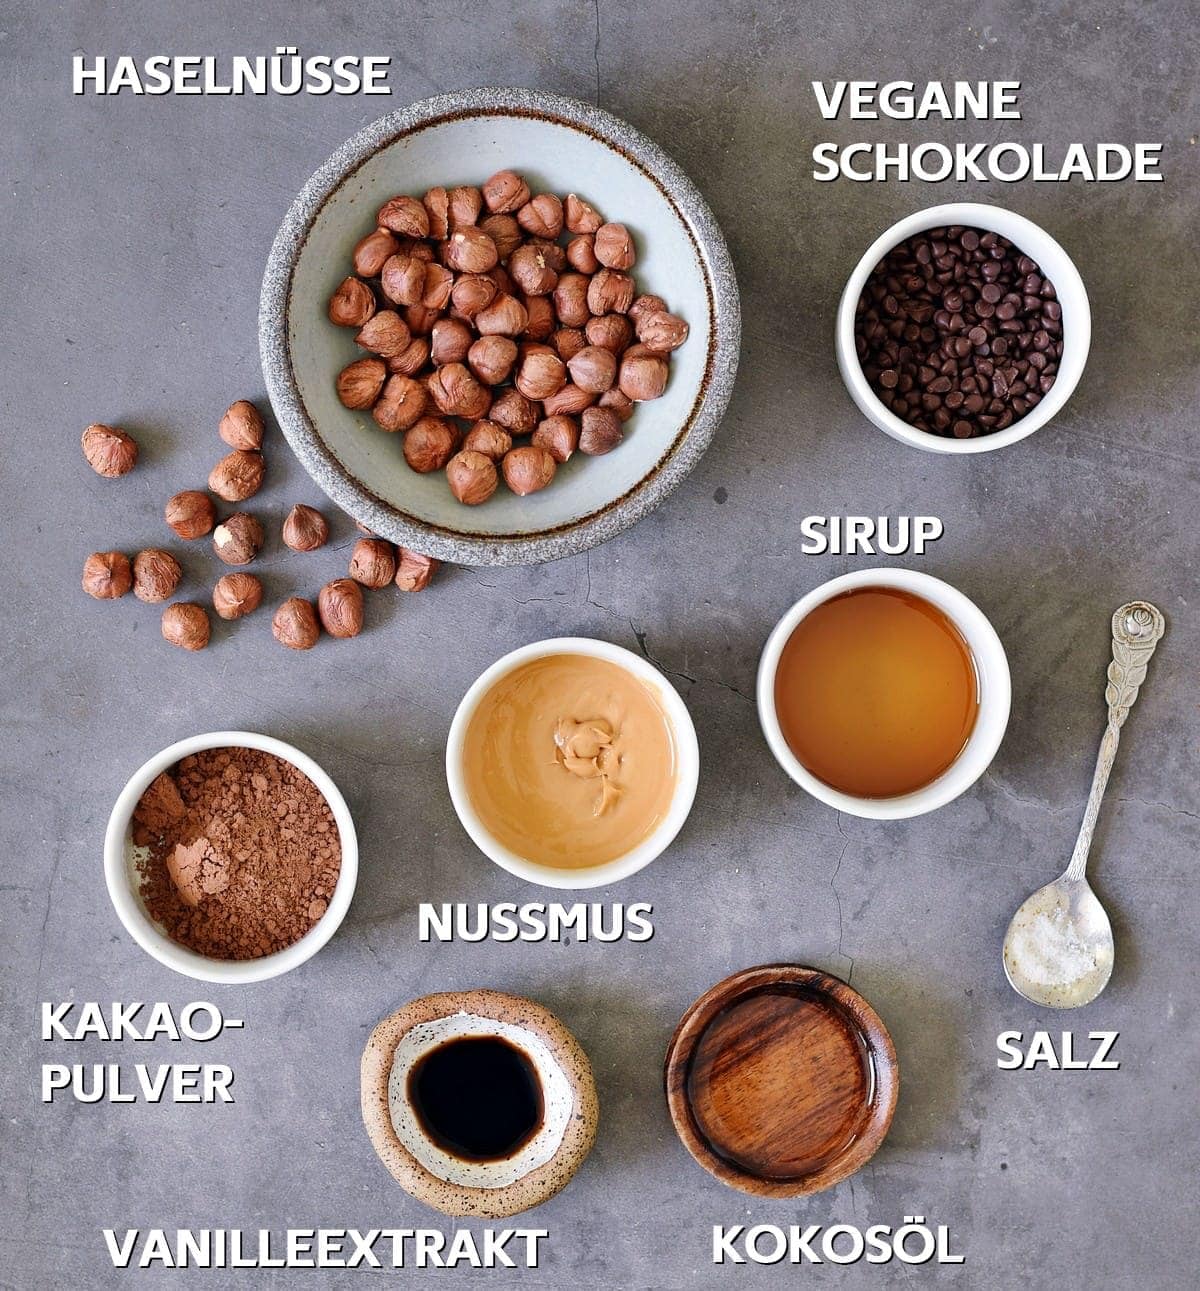 Vegane Schokolade, Sirup, Salz, Kokosöl, Nussmus, Vanilleextrakt, Kakaopulver, Haselnüsse auf grauem Hintergrund